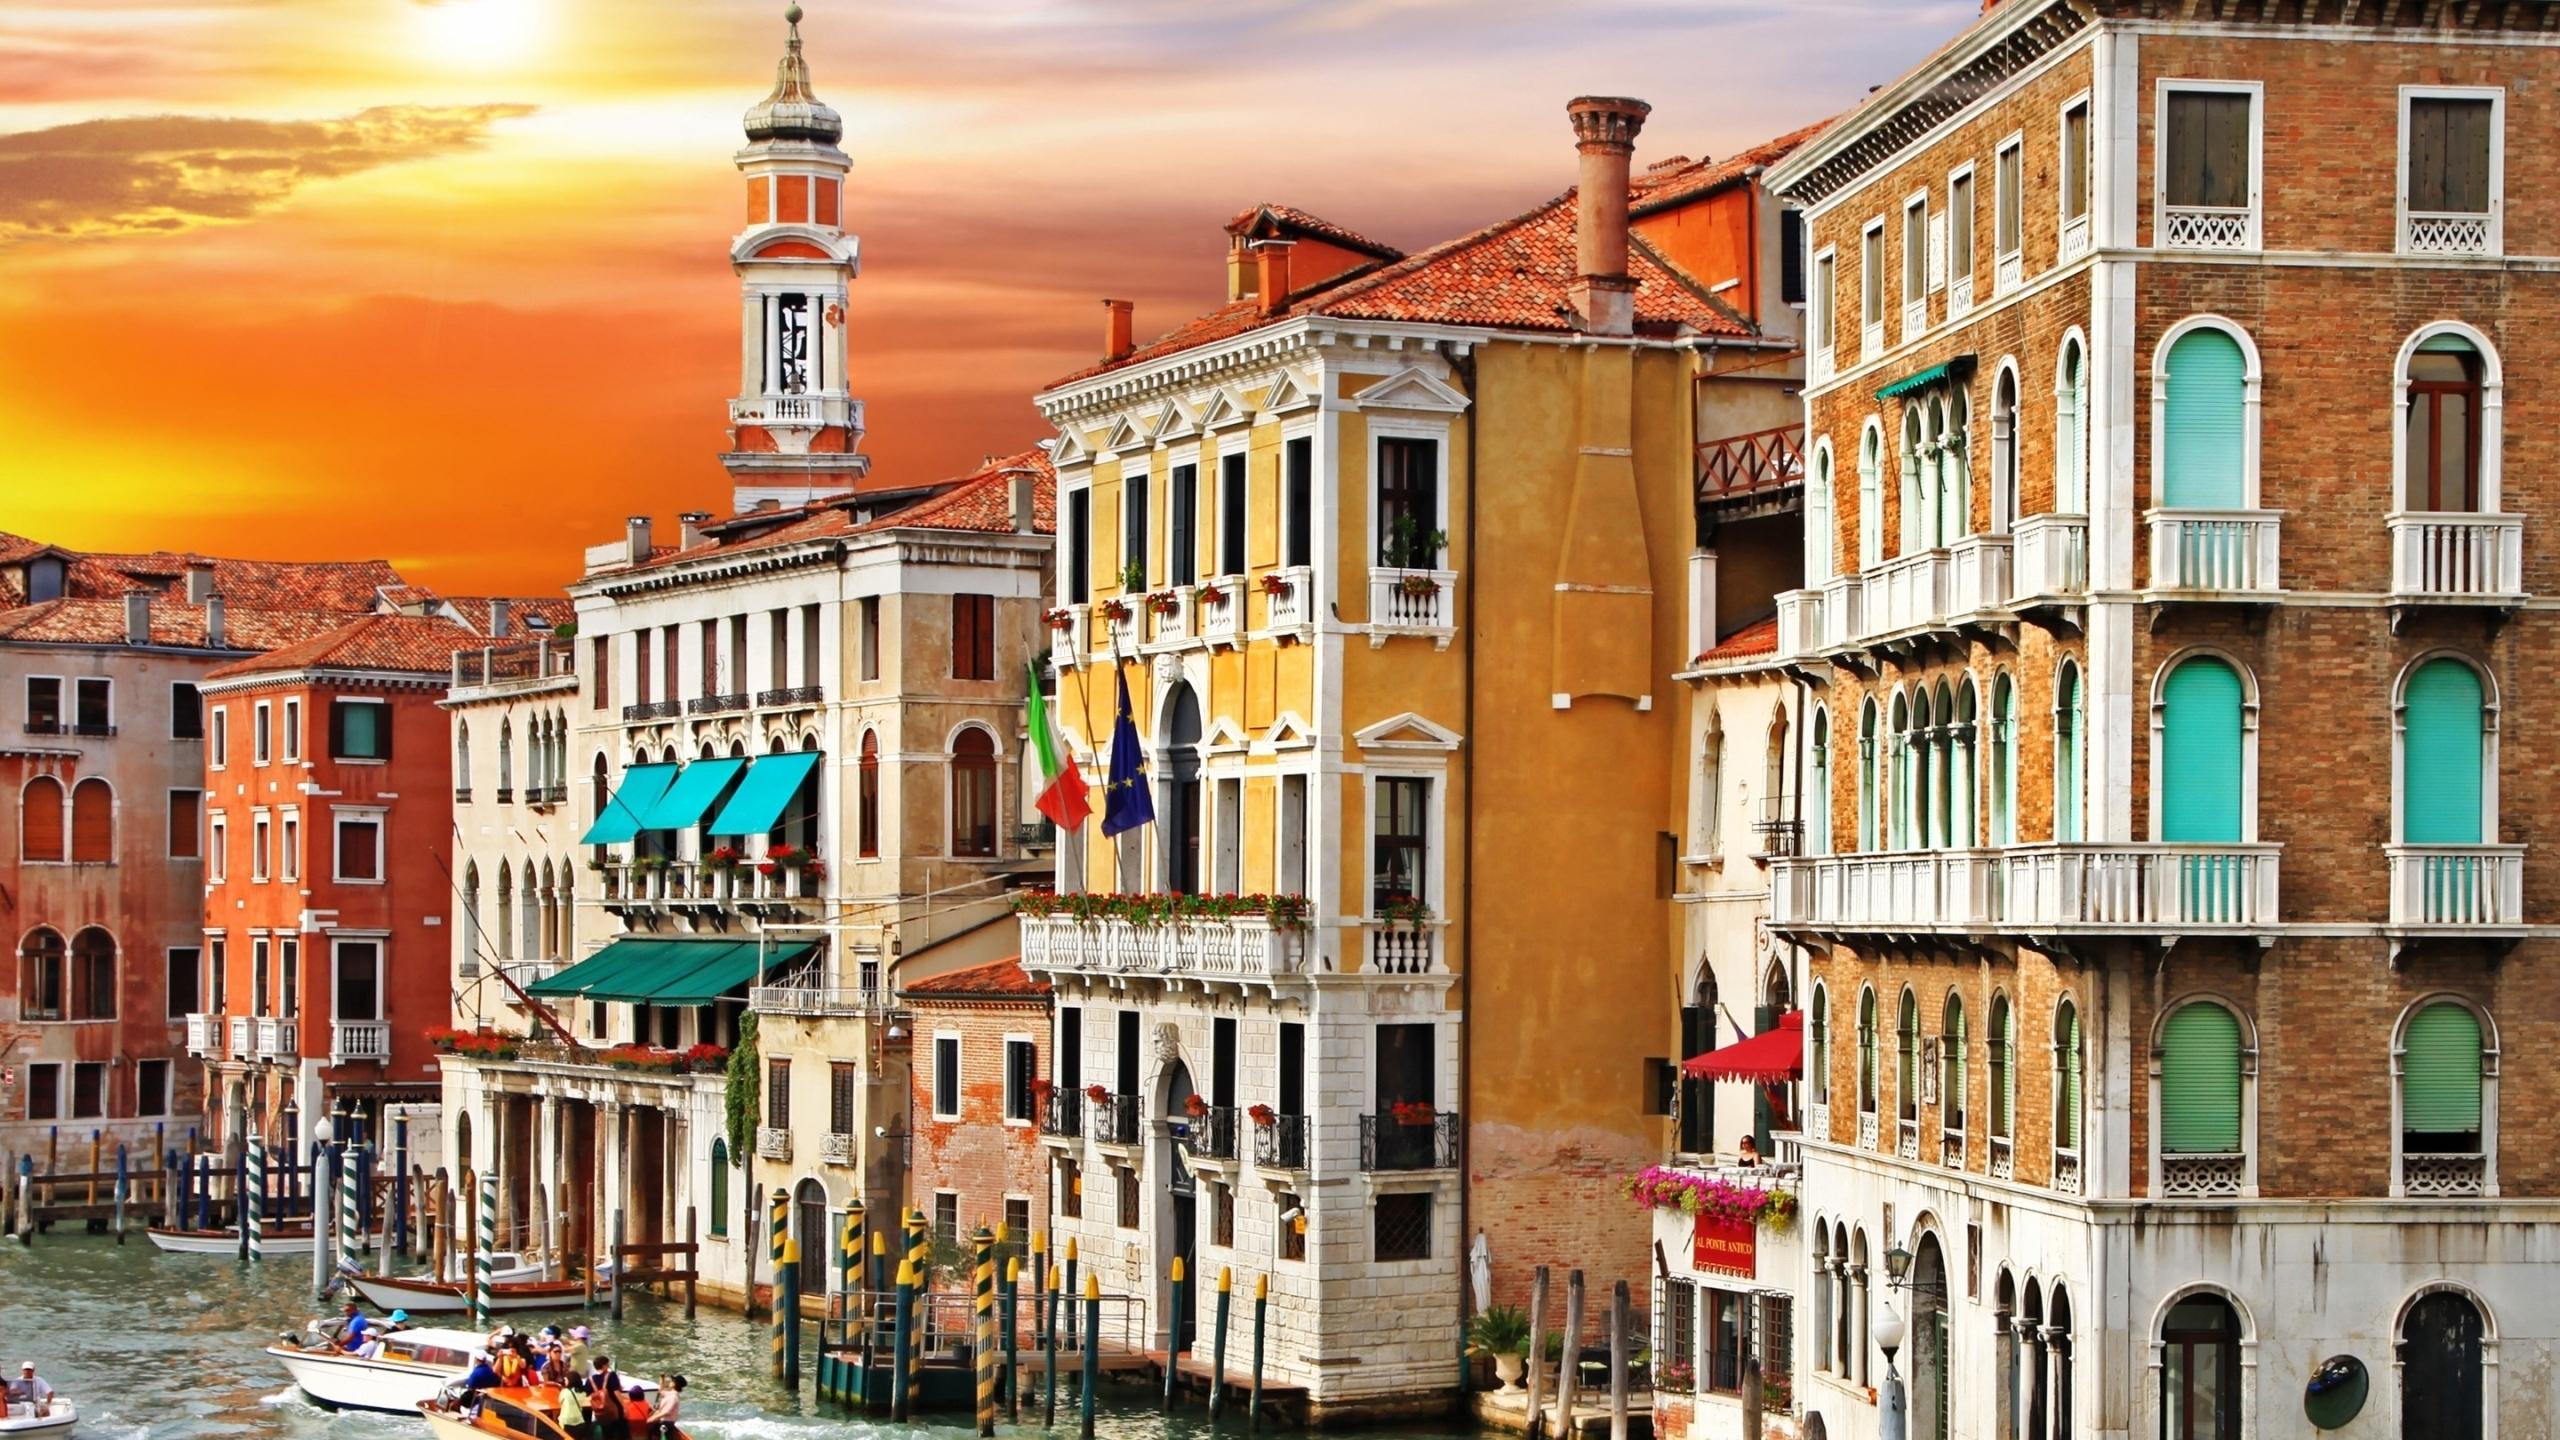 Colorful Venice Corner Mac Wallpaper Download. Free Mac Wallpaper